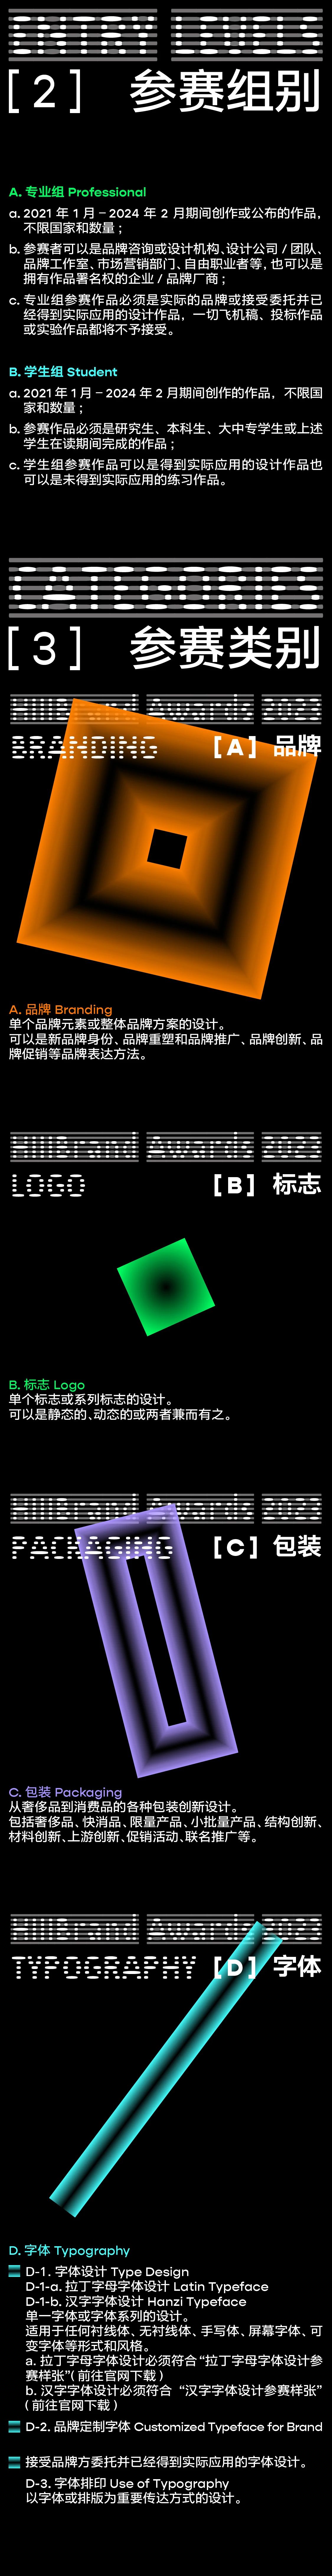 第十四届Hiiibrand Awards国际品牌&传达设计大奖